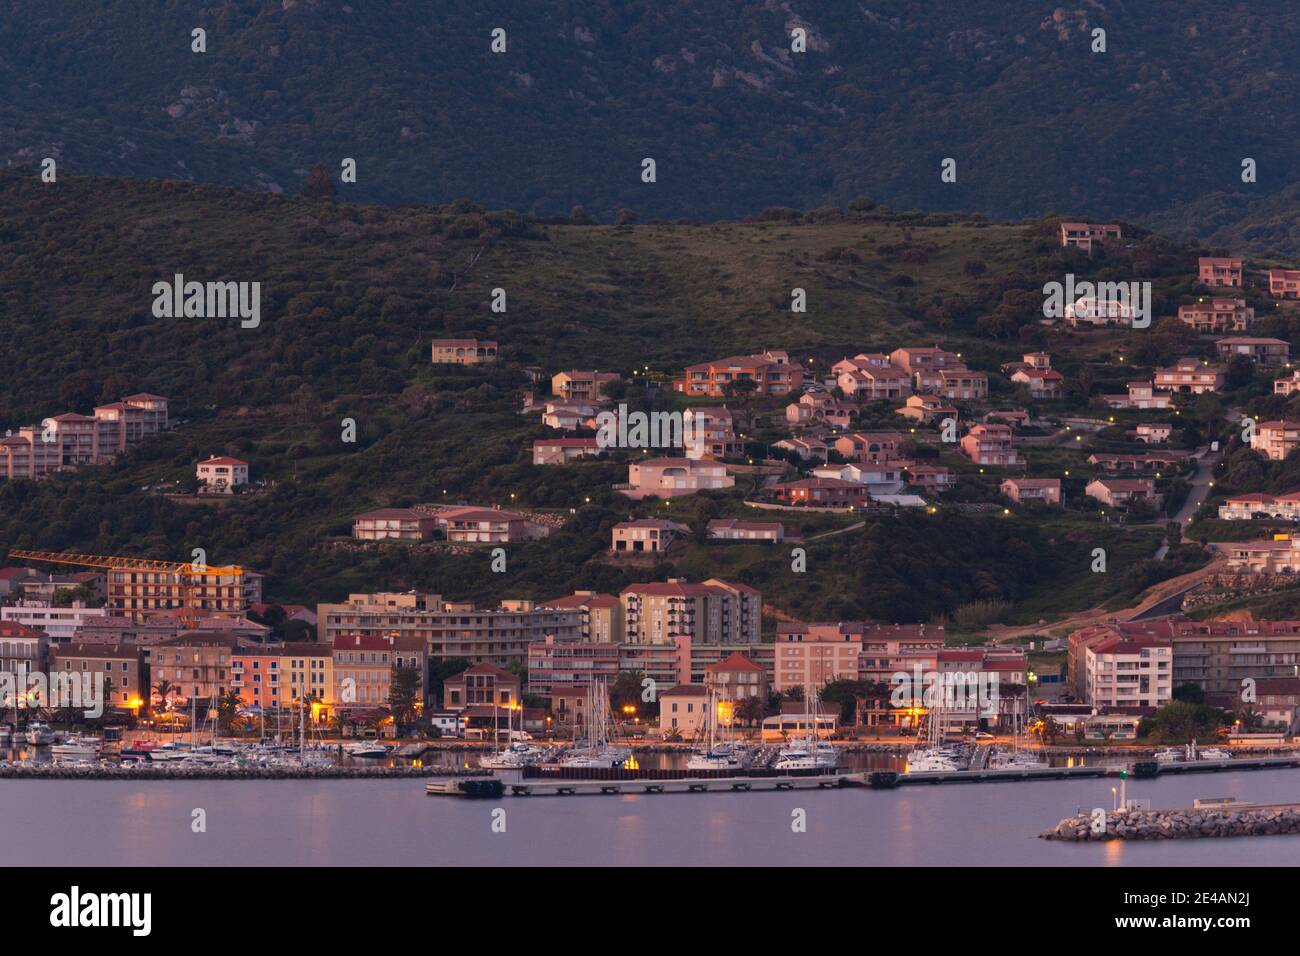 Vue panoramique sur une ville au bord de l'eau, Propriano, Corse-du-Sud, Corse, France Banque D'Images